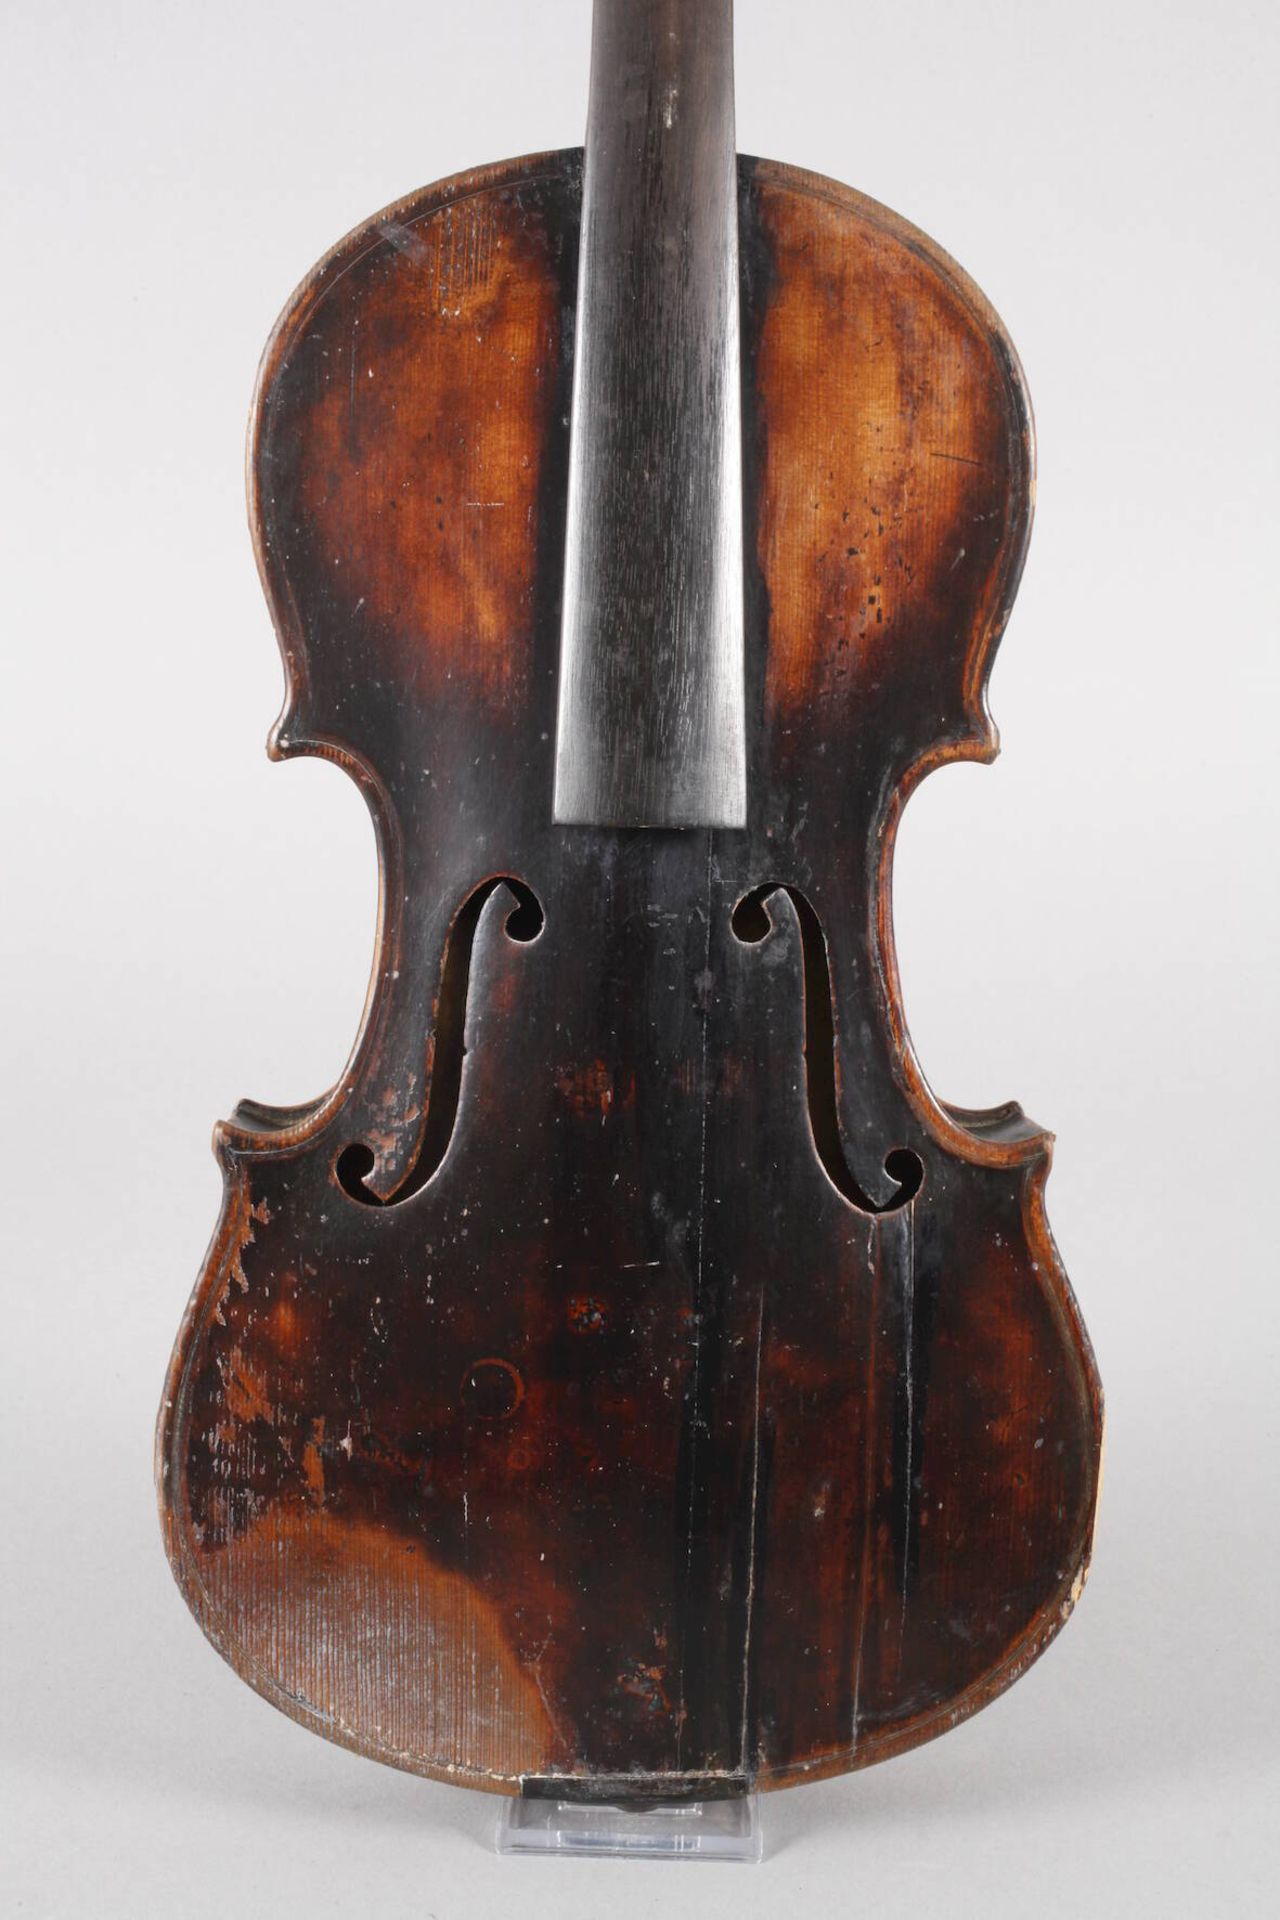 Violine Giovanni Dollenz 1. Hälfte 19. Jh., innen auf Klebezettel bezeichnet Giovanne Dollenz anno - Bild 2 aus 7